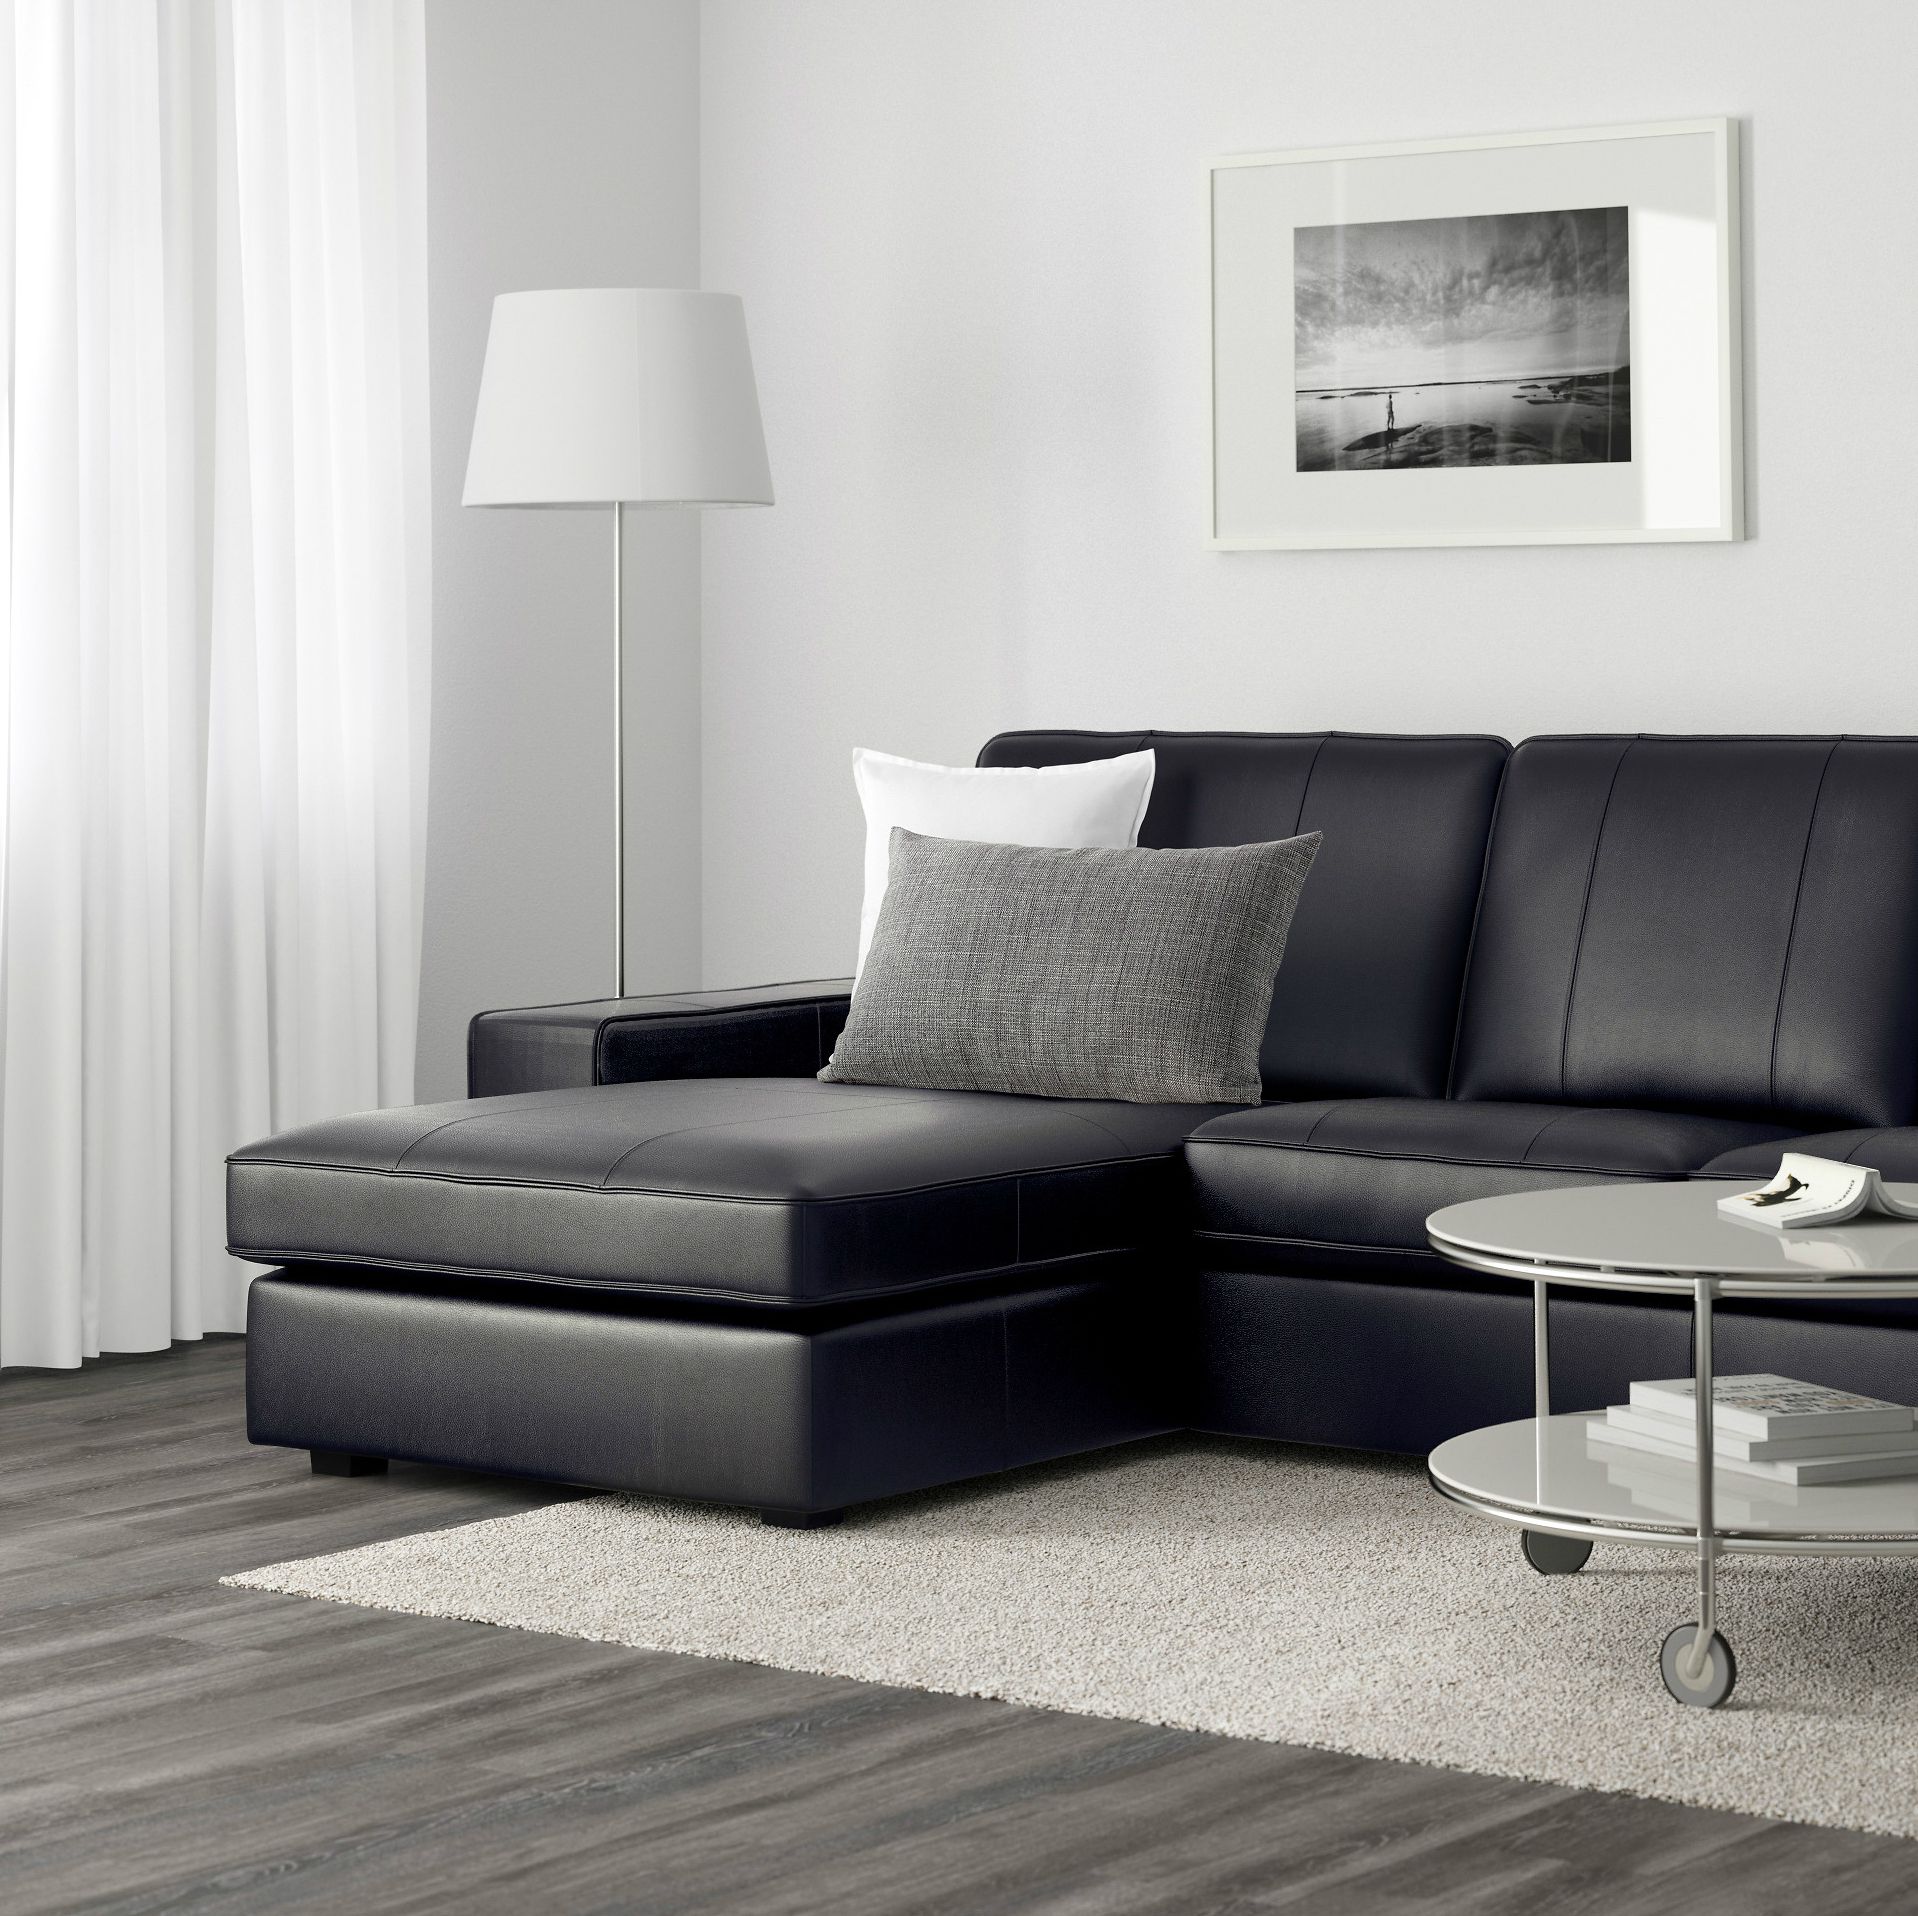  IKEA  Kivik Sofa  Series Review